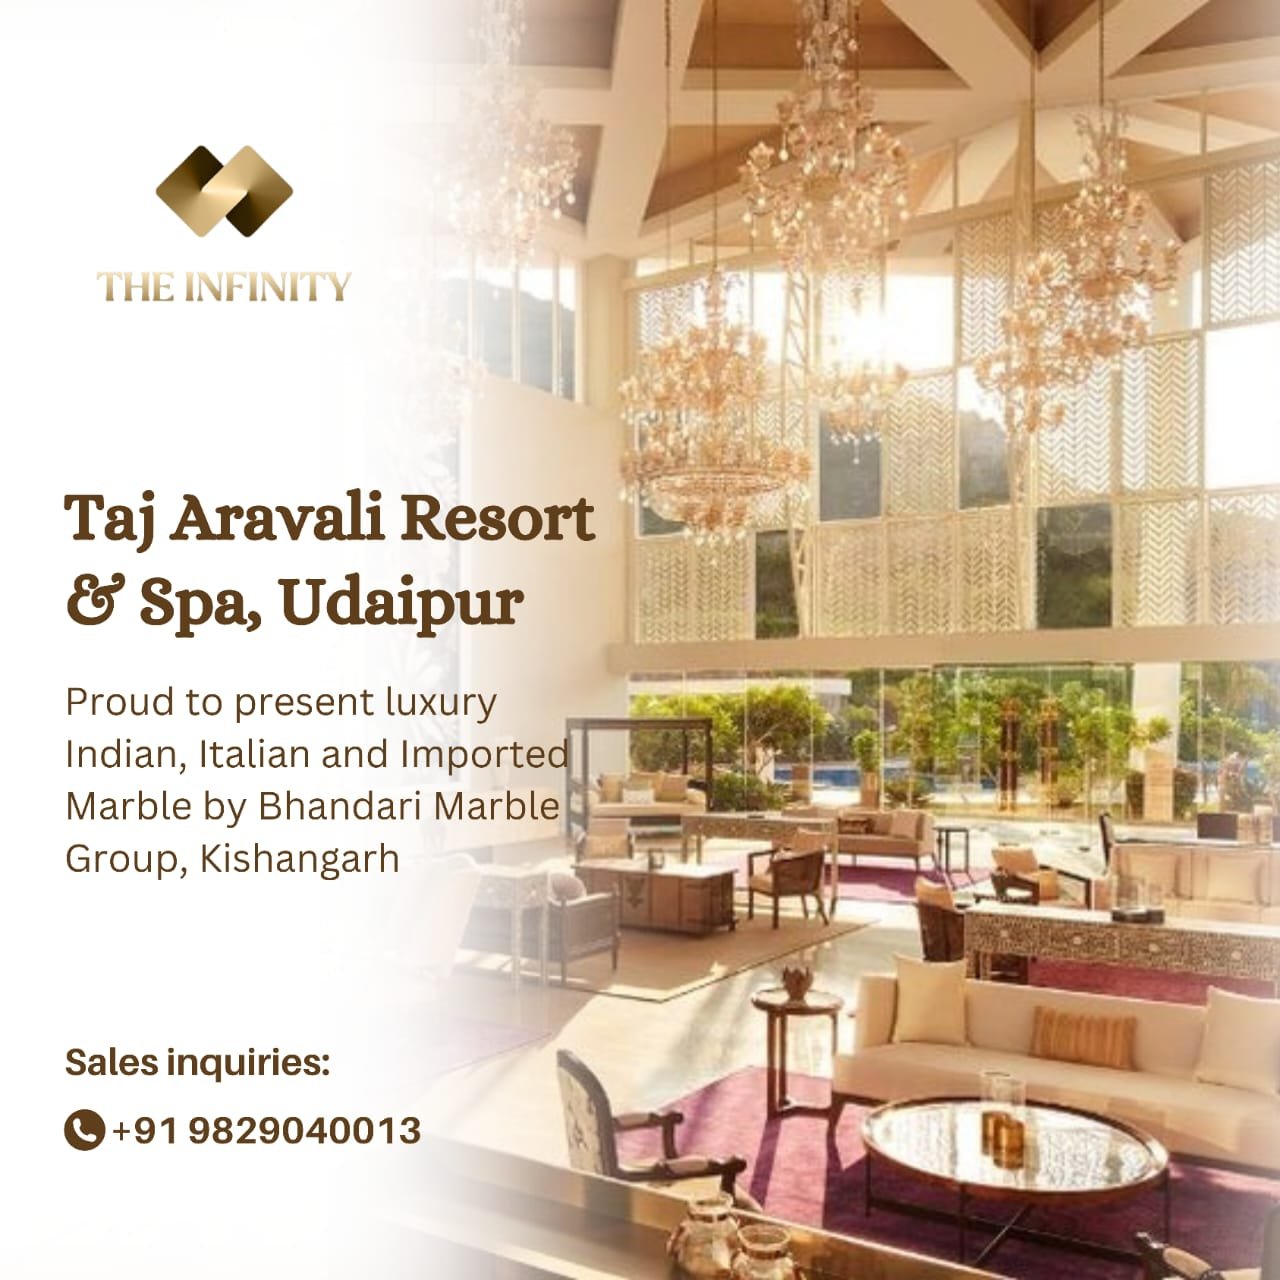 Luxury Taj Aravali Resort by Bhandari Marble Group